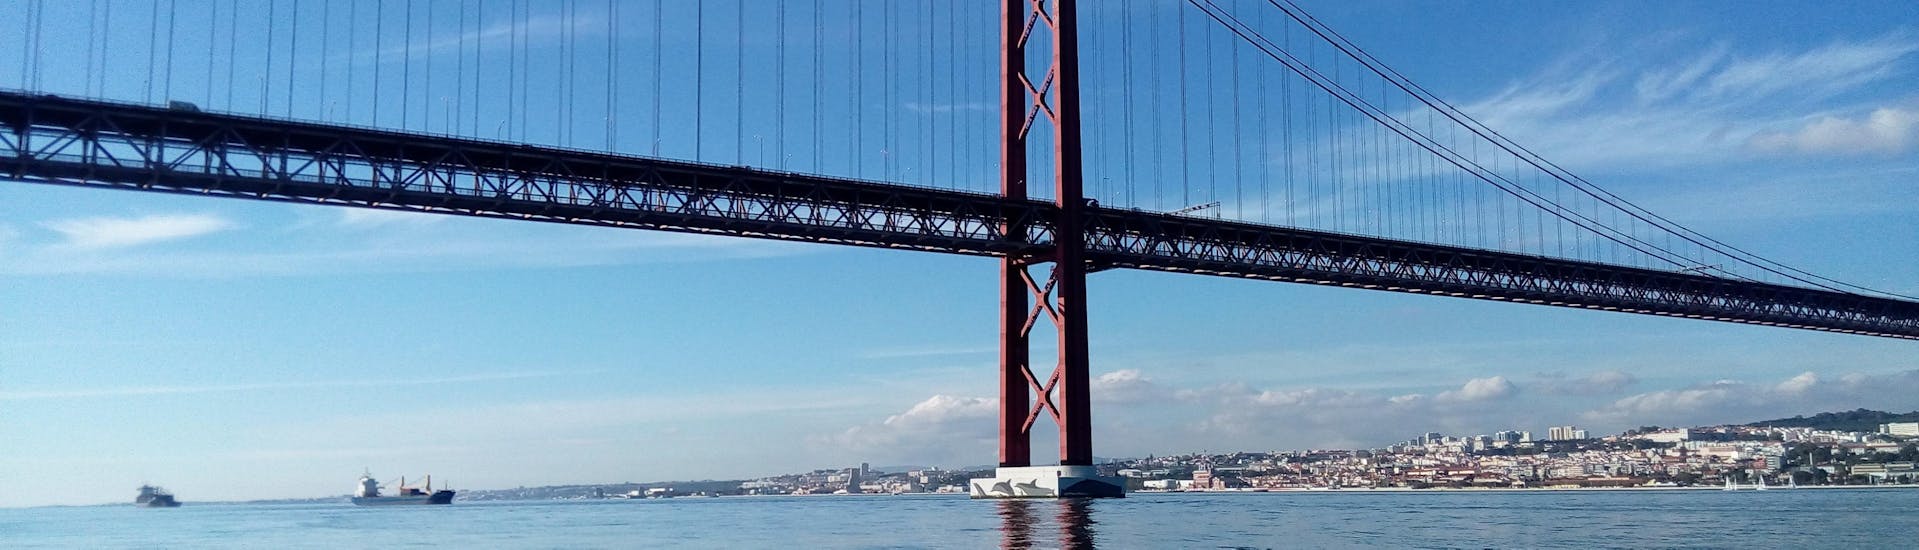 Il maestoso Ponte Vasco da Gama può essere ammirato durante questa gita in barca a vela sul Tago, incluso il Ponte Vasco da Gama con Lisbona in barca.